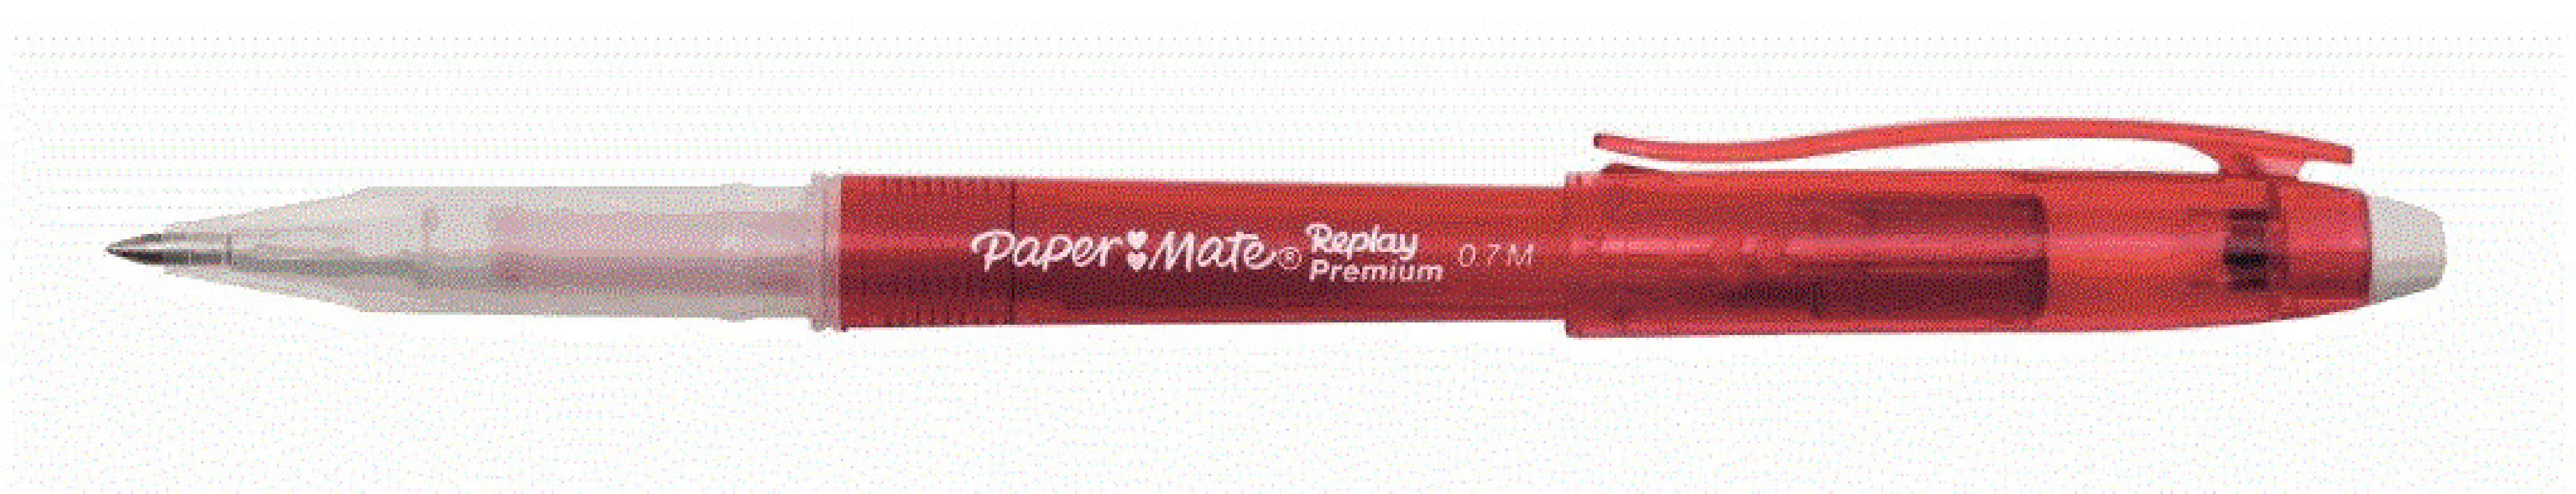 Erasable Pen 0.7 Red Replay  Pemium Paper mate